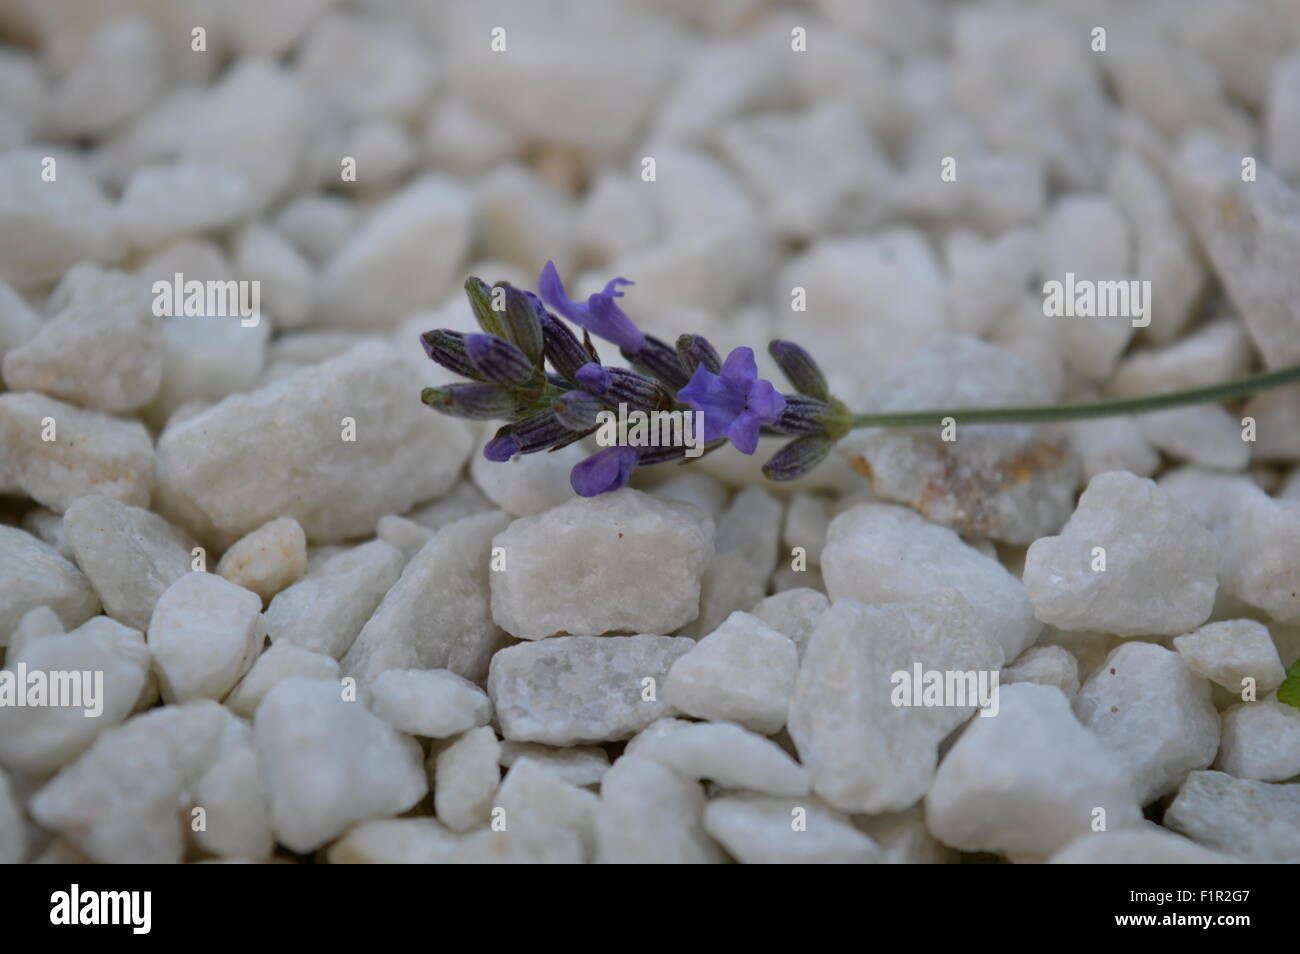 Lavender Flower on white stones Stock Photo